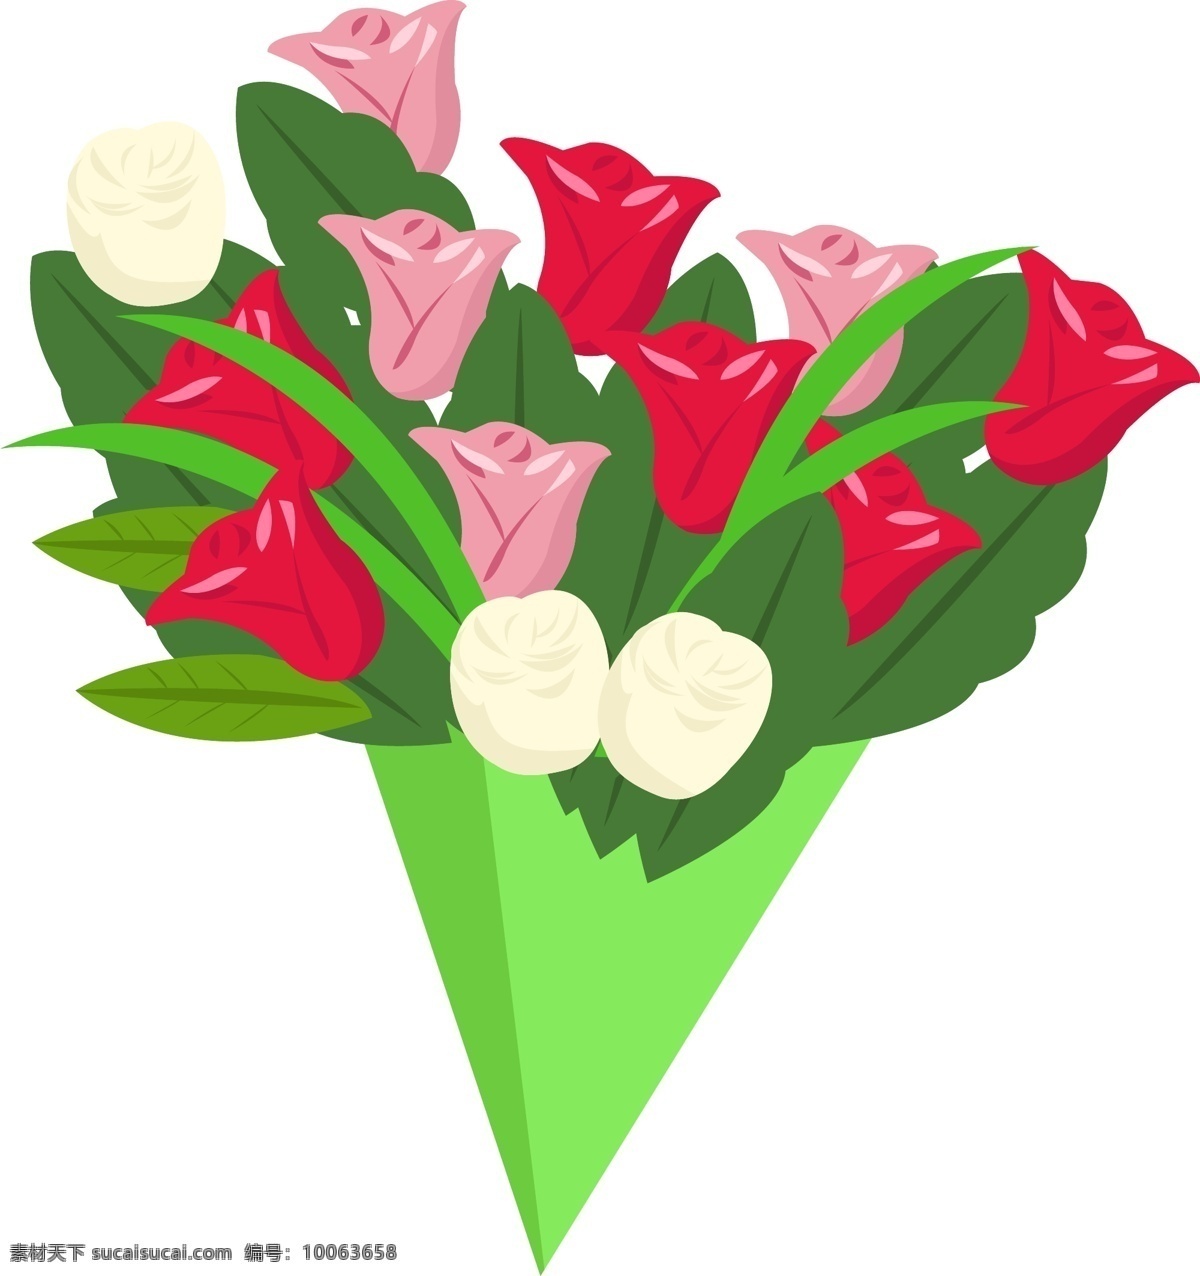 手绘 玫瑰 花束 插画 玫瑰花 鲜花 爱情 绿叶 绿色 红色玫瑰花 粉色玫瑰花 花儿 手绘玫瑰 花束插画